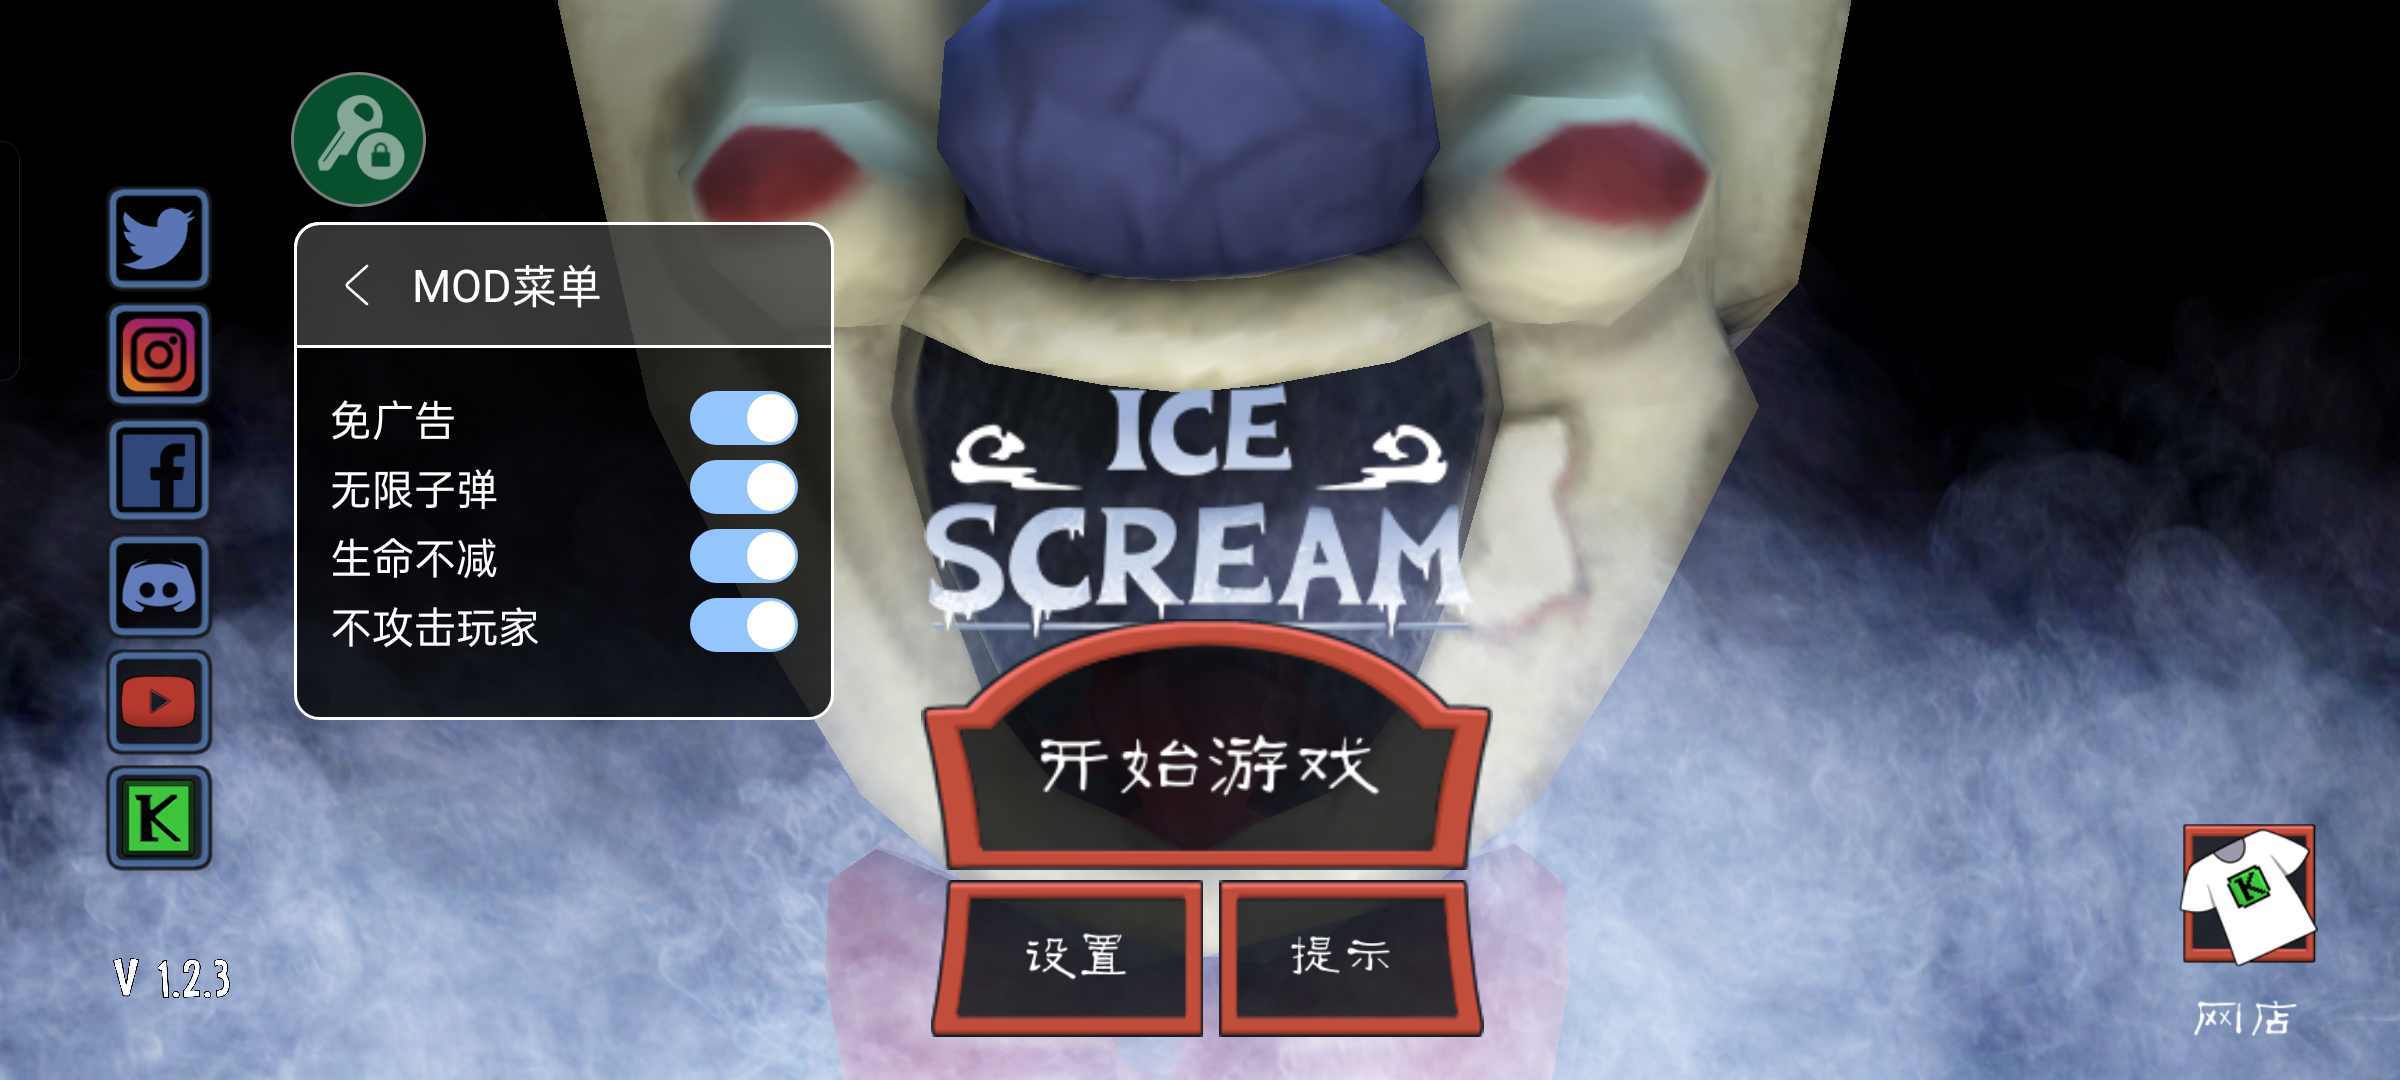 冰淇淋恐怖邻居(Ice Scream)